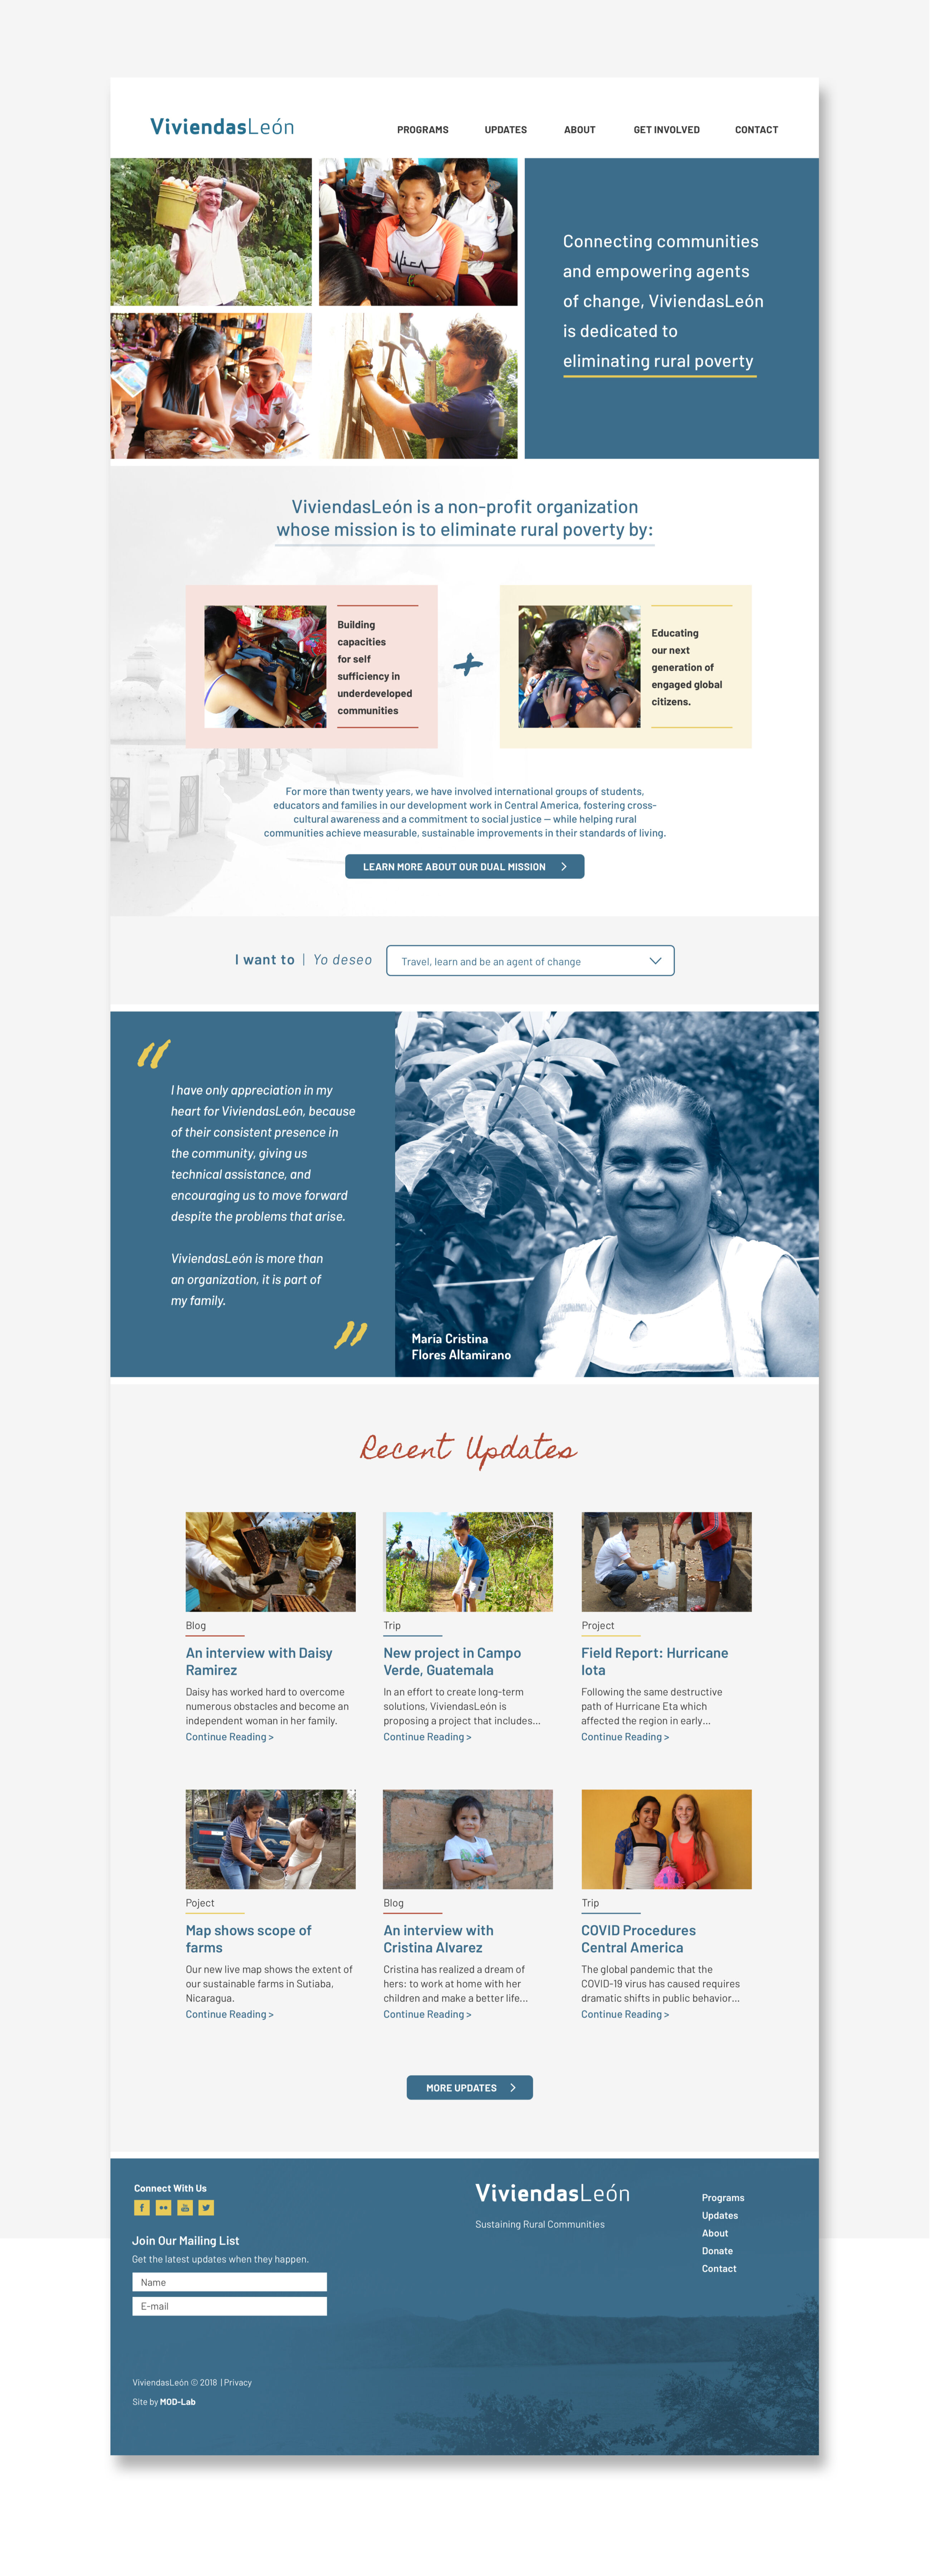 ViviendasLeón website homepage